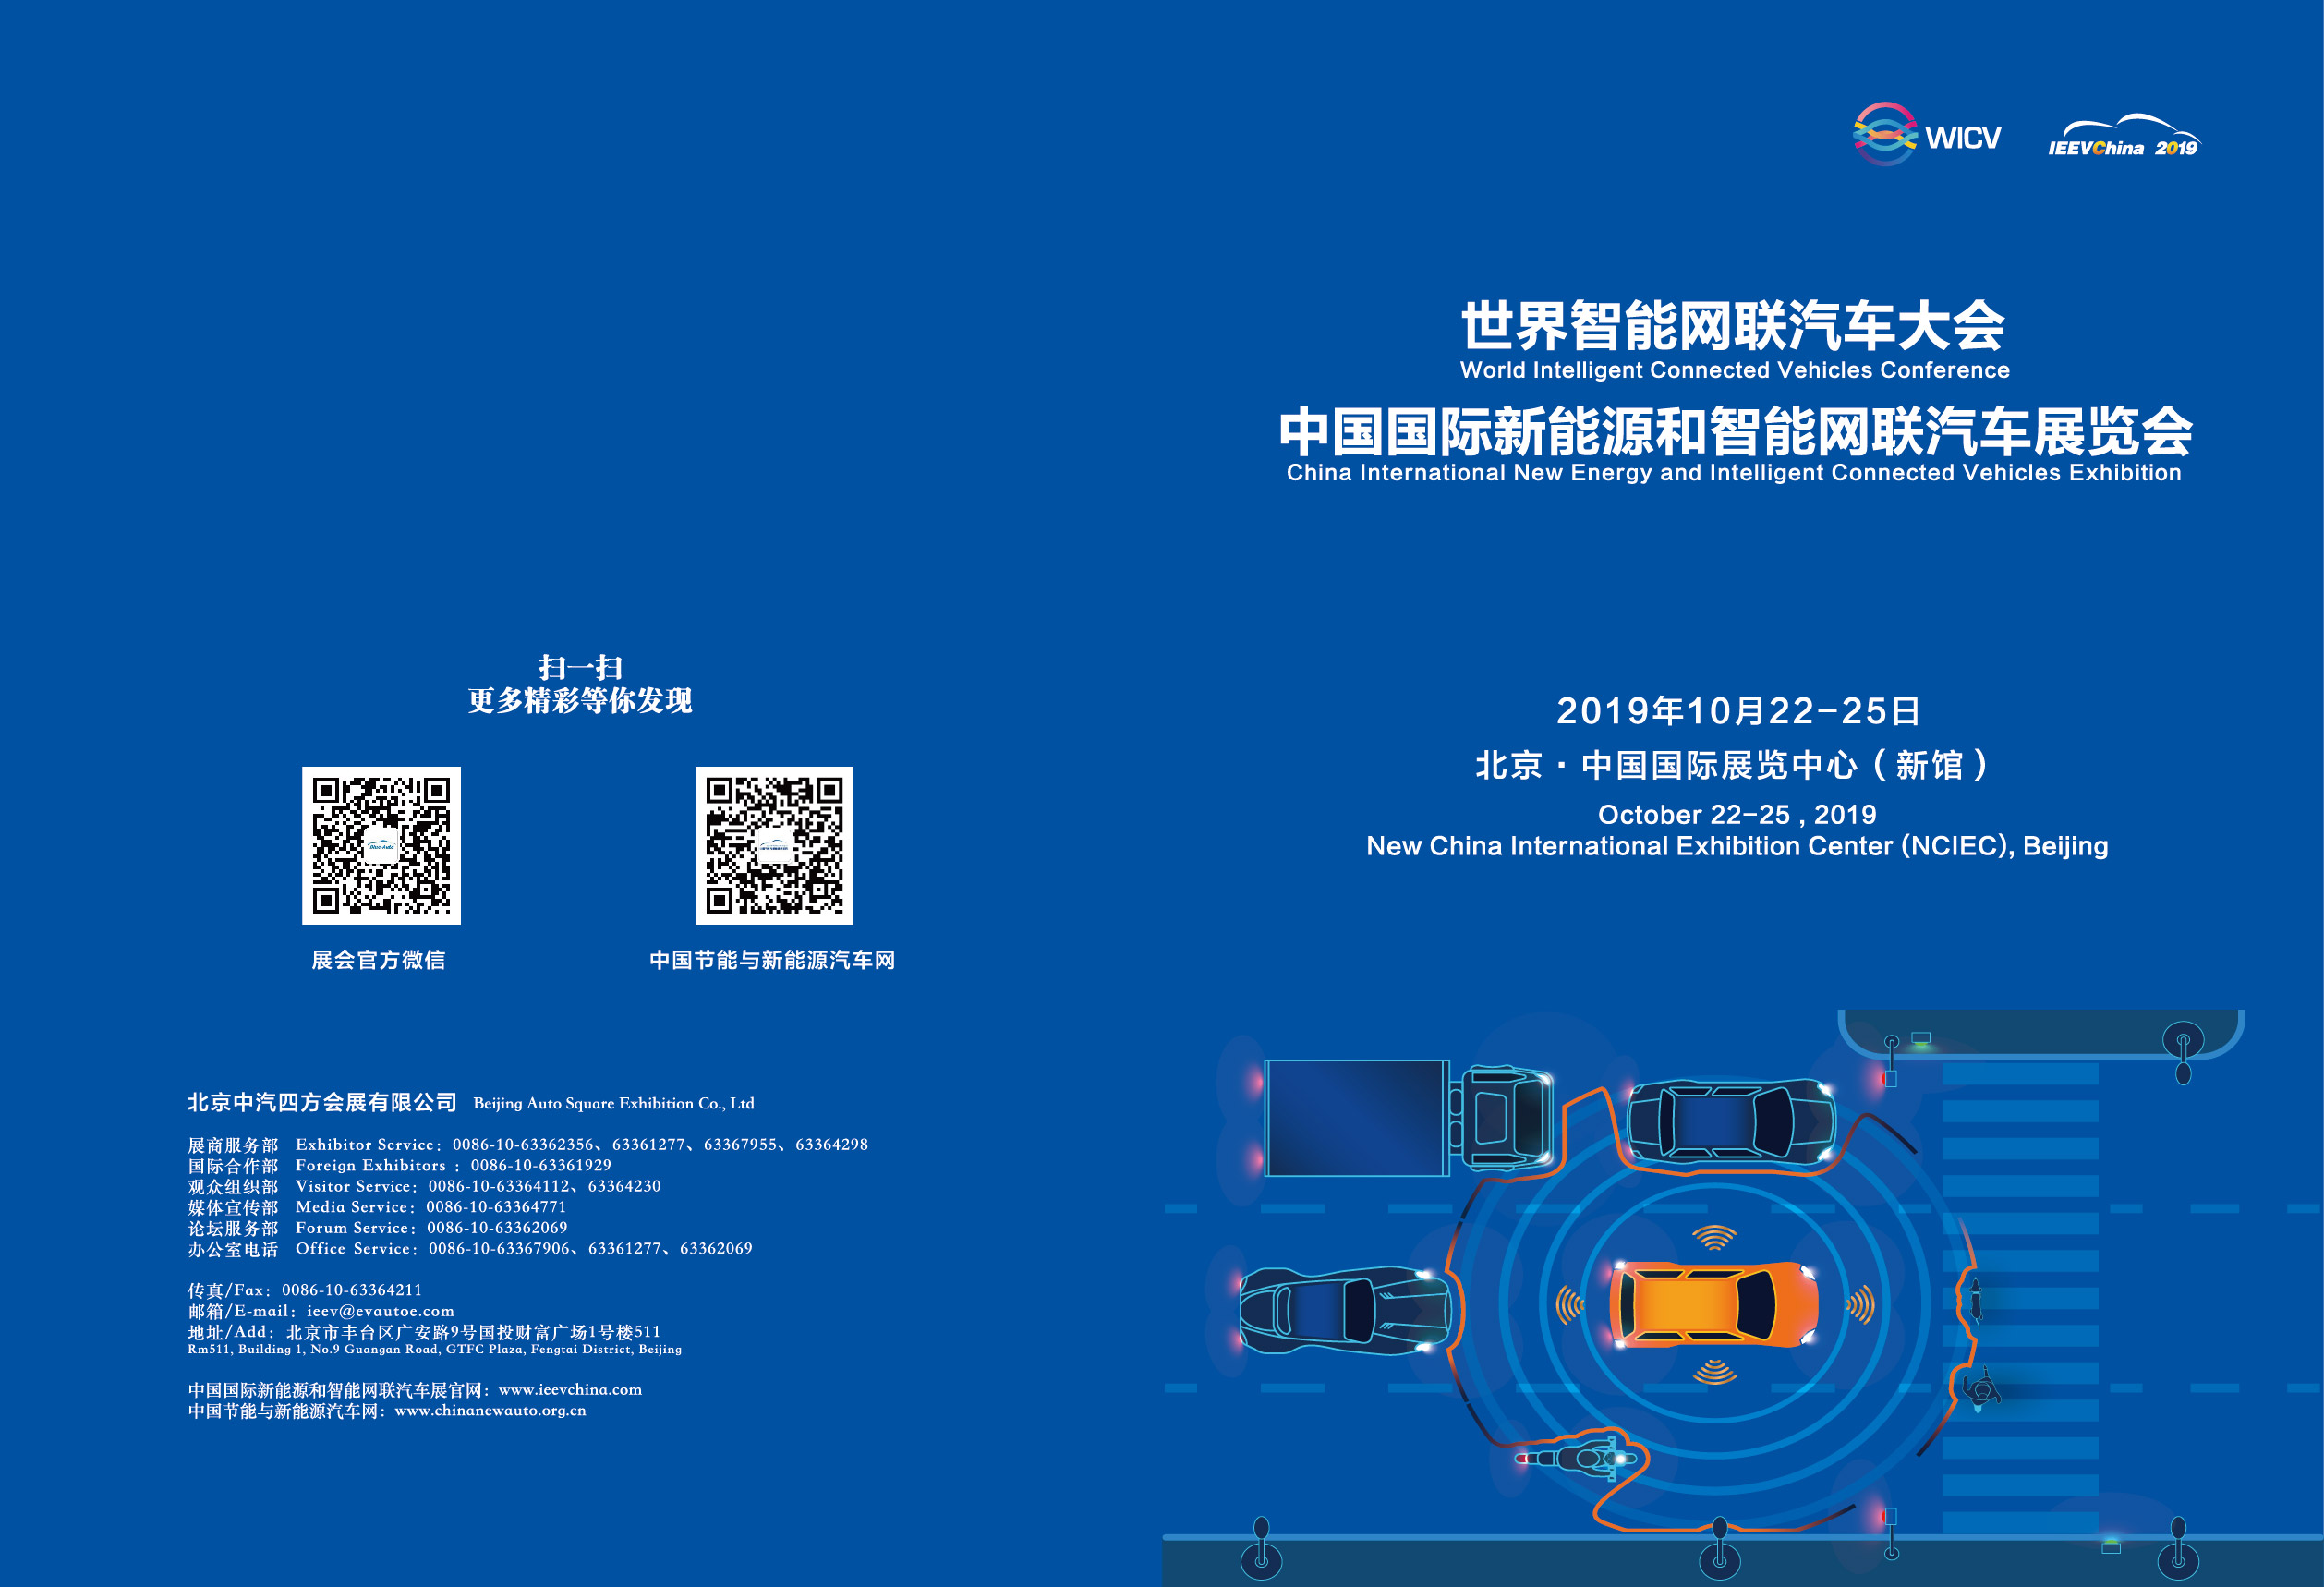 IEEVChina 2019招展函 你想知道的一切都在这了_世界智能网联汽车大会暨中国国际新能源和智能网联汽车展览会